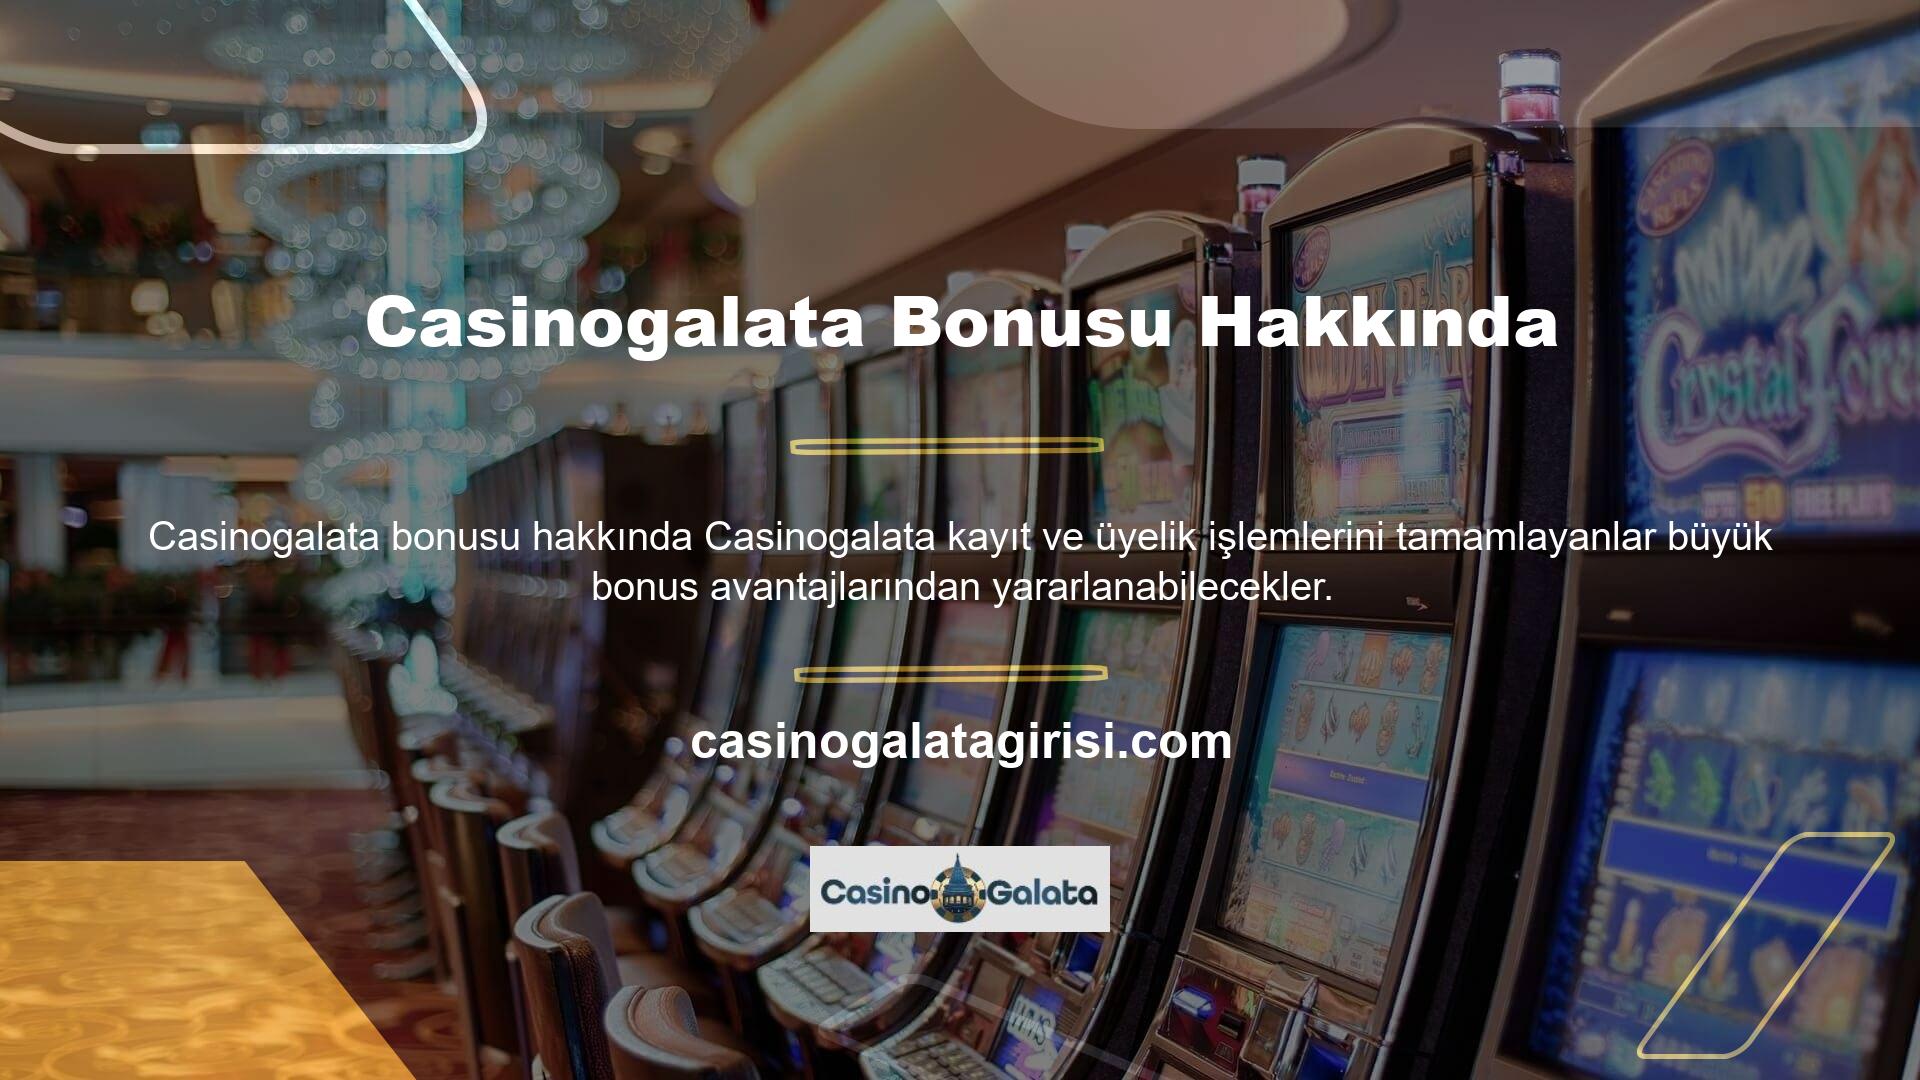 Casino sitesi, her yatırım için üyelere büyük ikramiyeler dağıtır